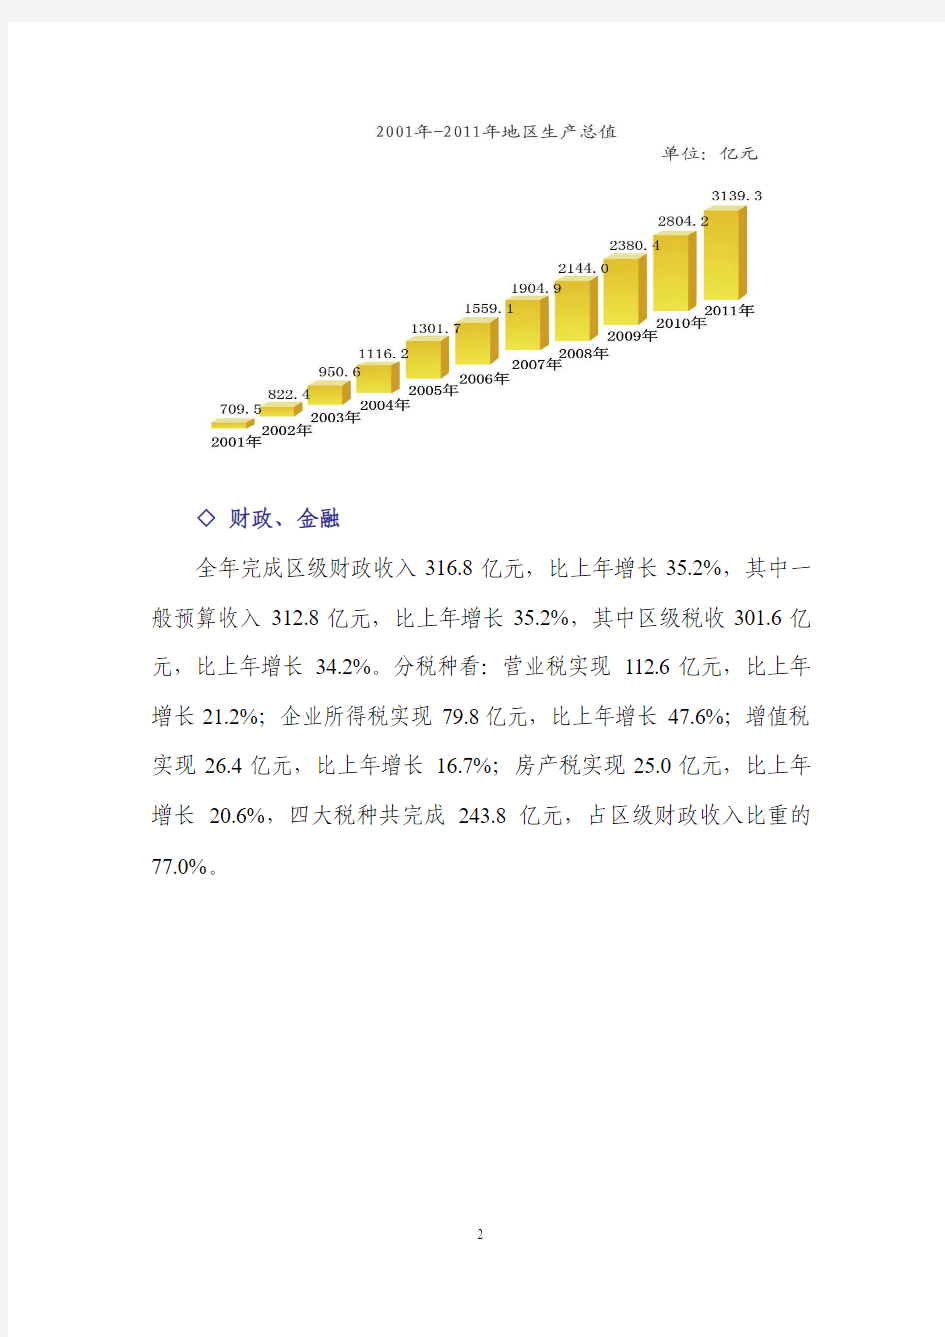 北京朝阳区2011年经济情况报表